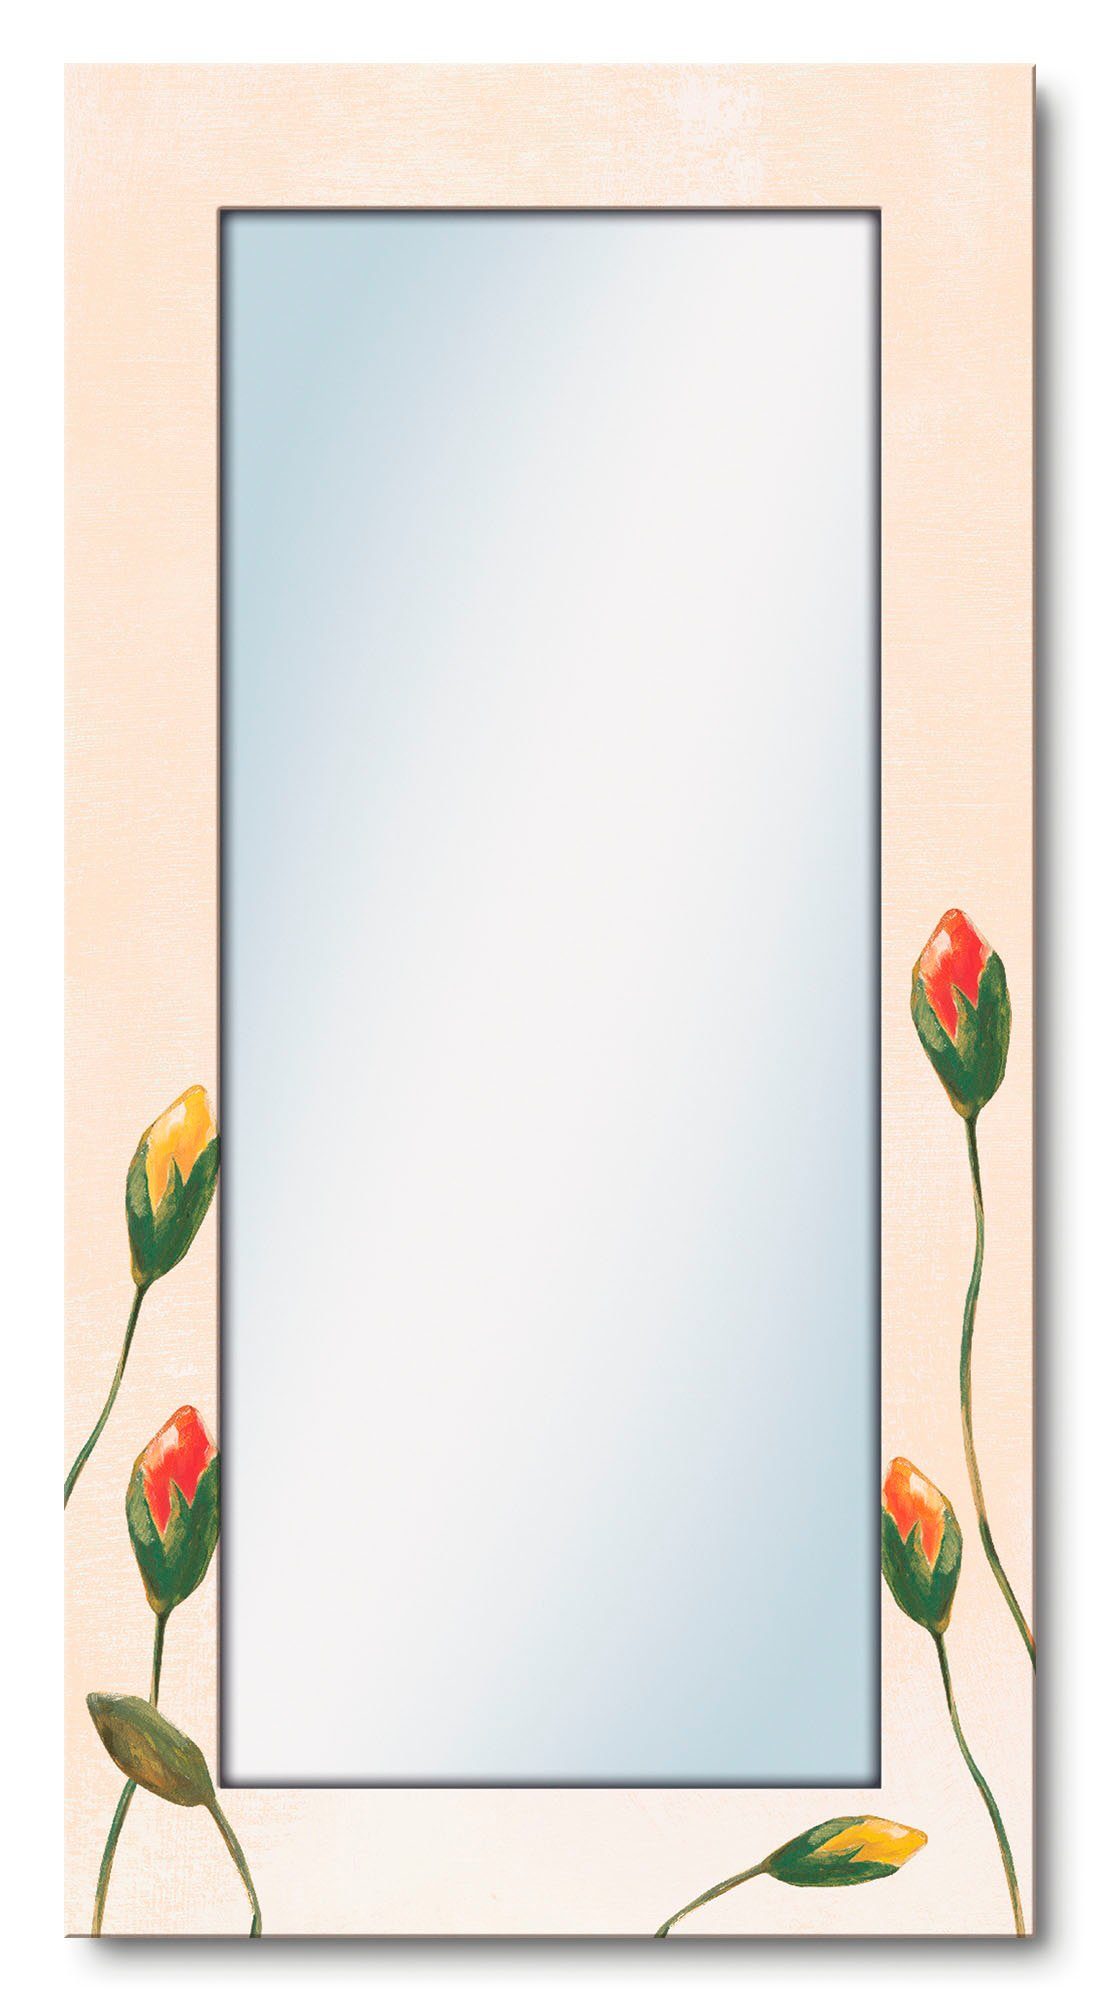 Artland Dekospiegel Bunte Mohnblumen, gerahmter Ganzkörperspiegel, Wandspiegel, mit Motivrahmen, Landhaus